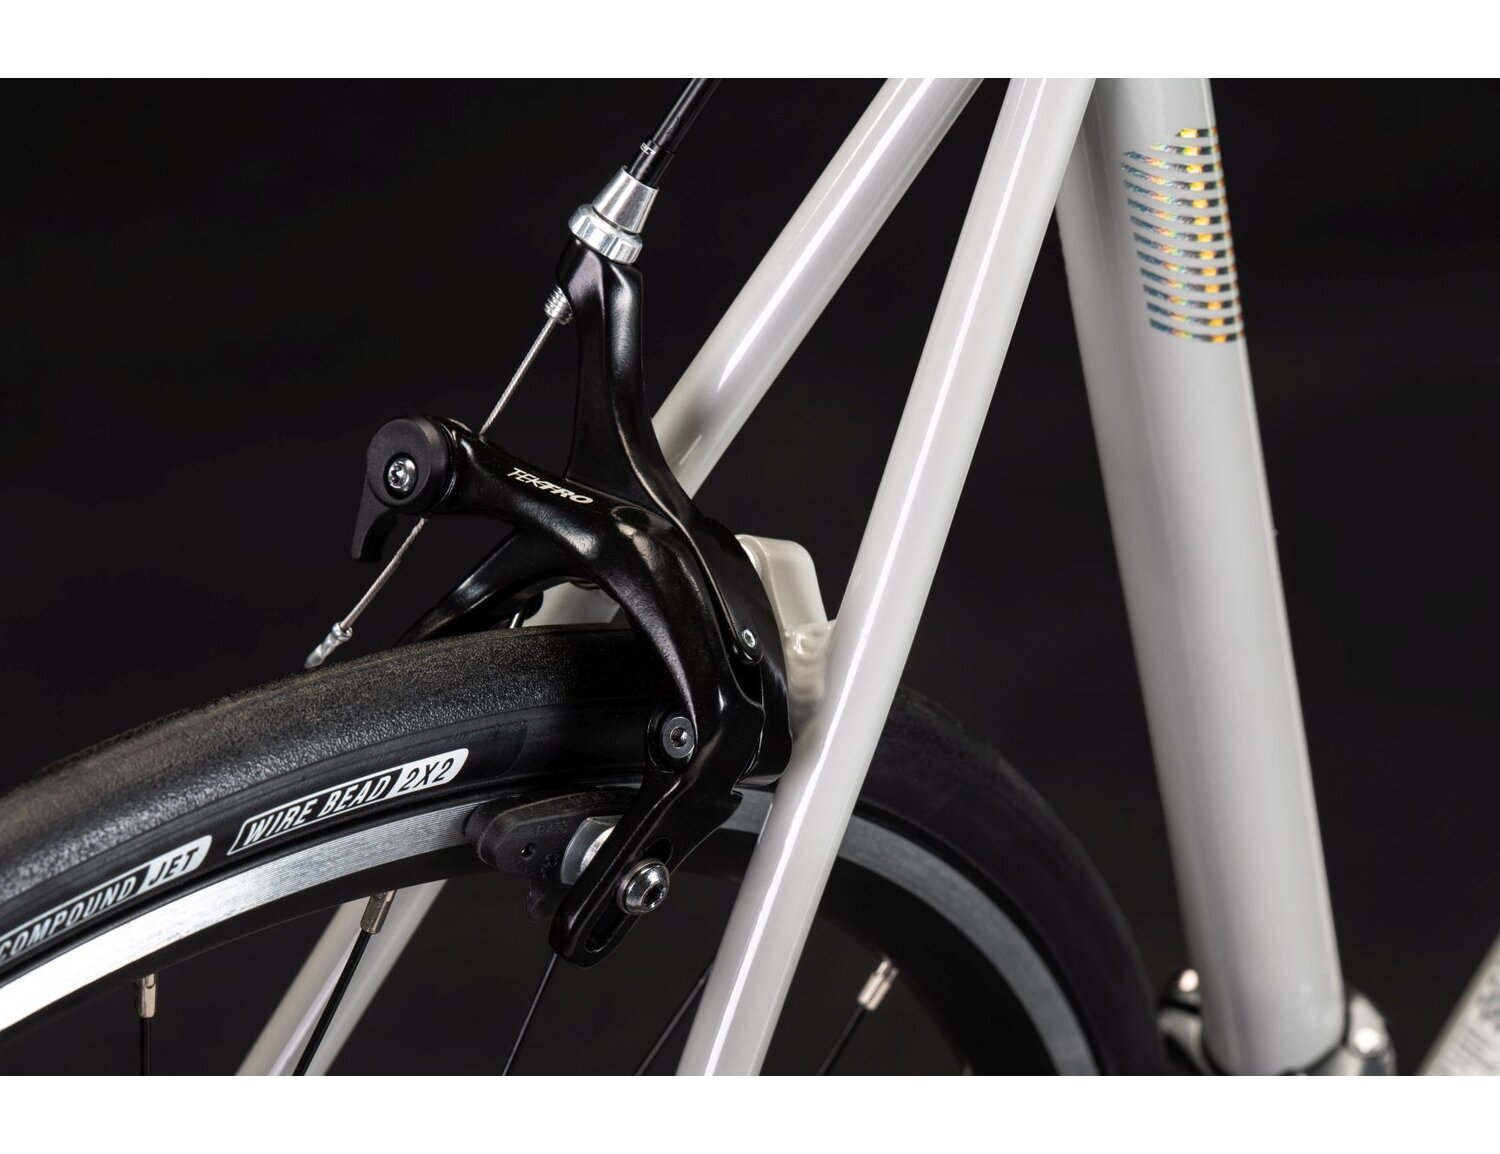  Hamulce v-brake Tektro R315 oraz tylna opona w rowerze szosowym KROSS Vento 2.0 